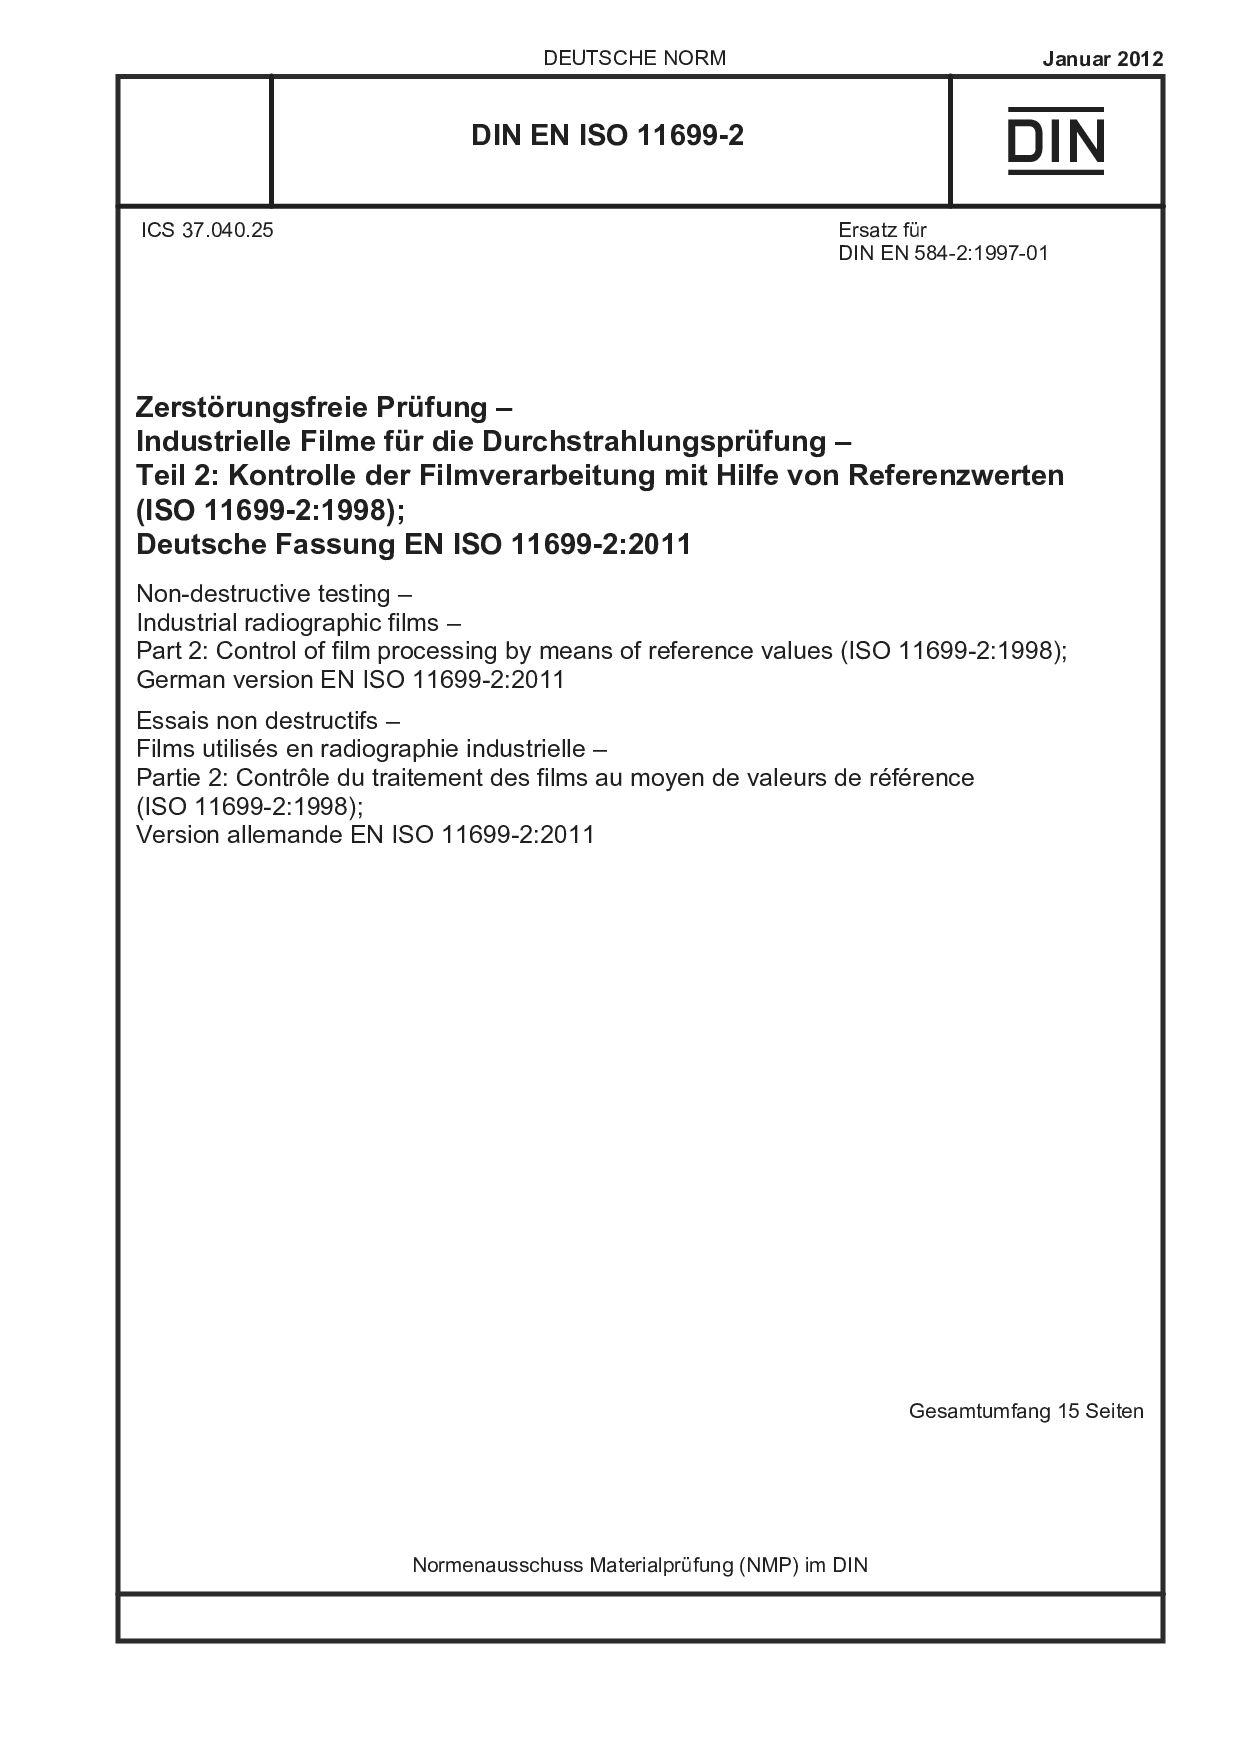 DIN EN ISO 11699-2:2012